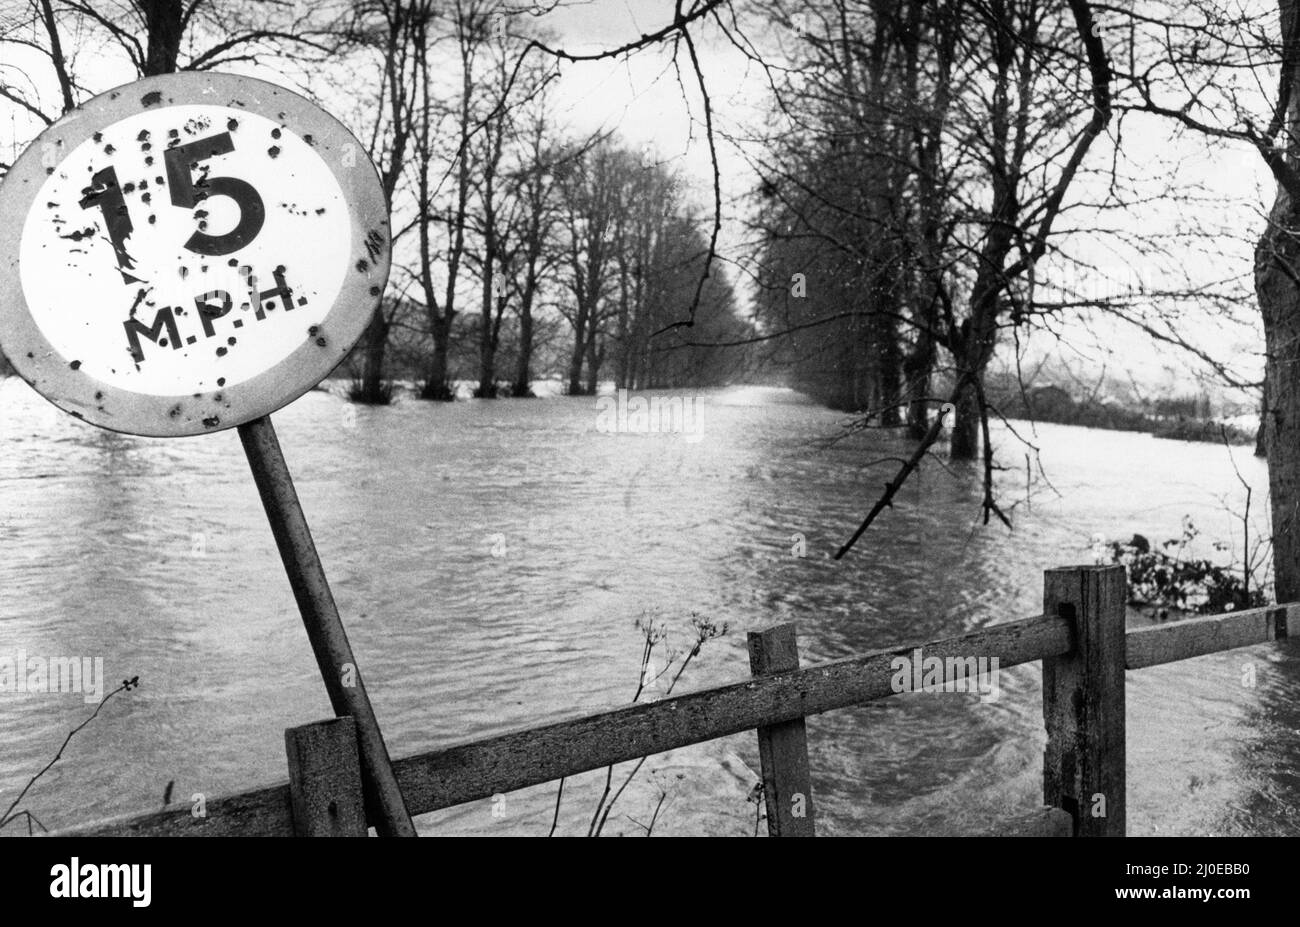 Cardiff Hochwasser 1979, unser Bild zeigt ... 15 Meilen pro Stunde gibt das Schild an, aber nur mit dem Boot, da der Fluss Taff unter der Western Avenue Bridge rast und seine Ufer bricht, Cardiff, Donnerstag, den 27.. Dezember 1979. Stockfoto